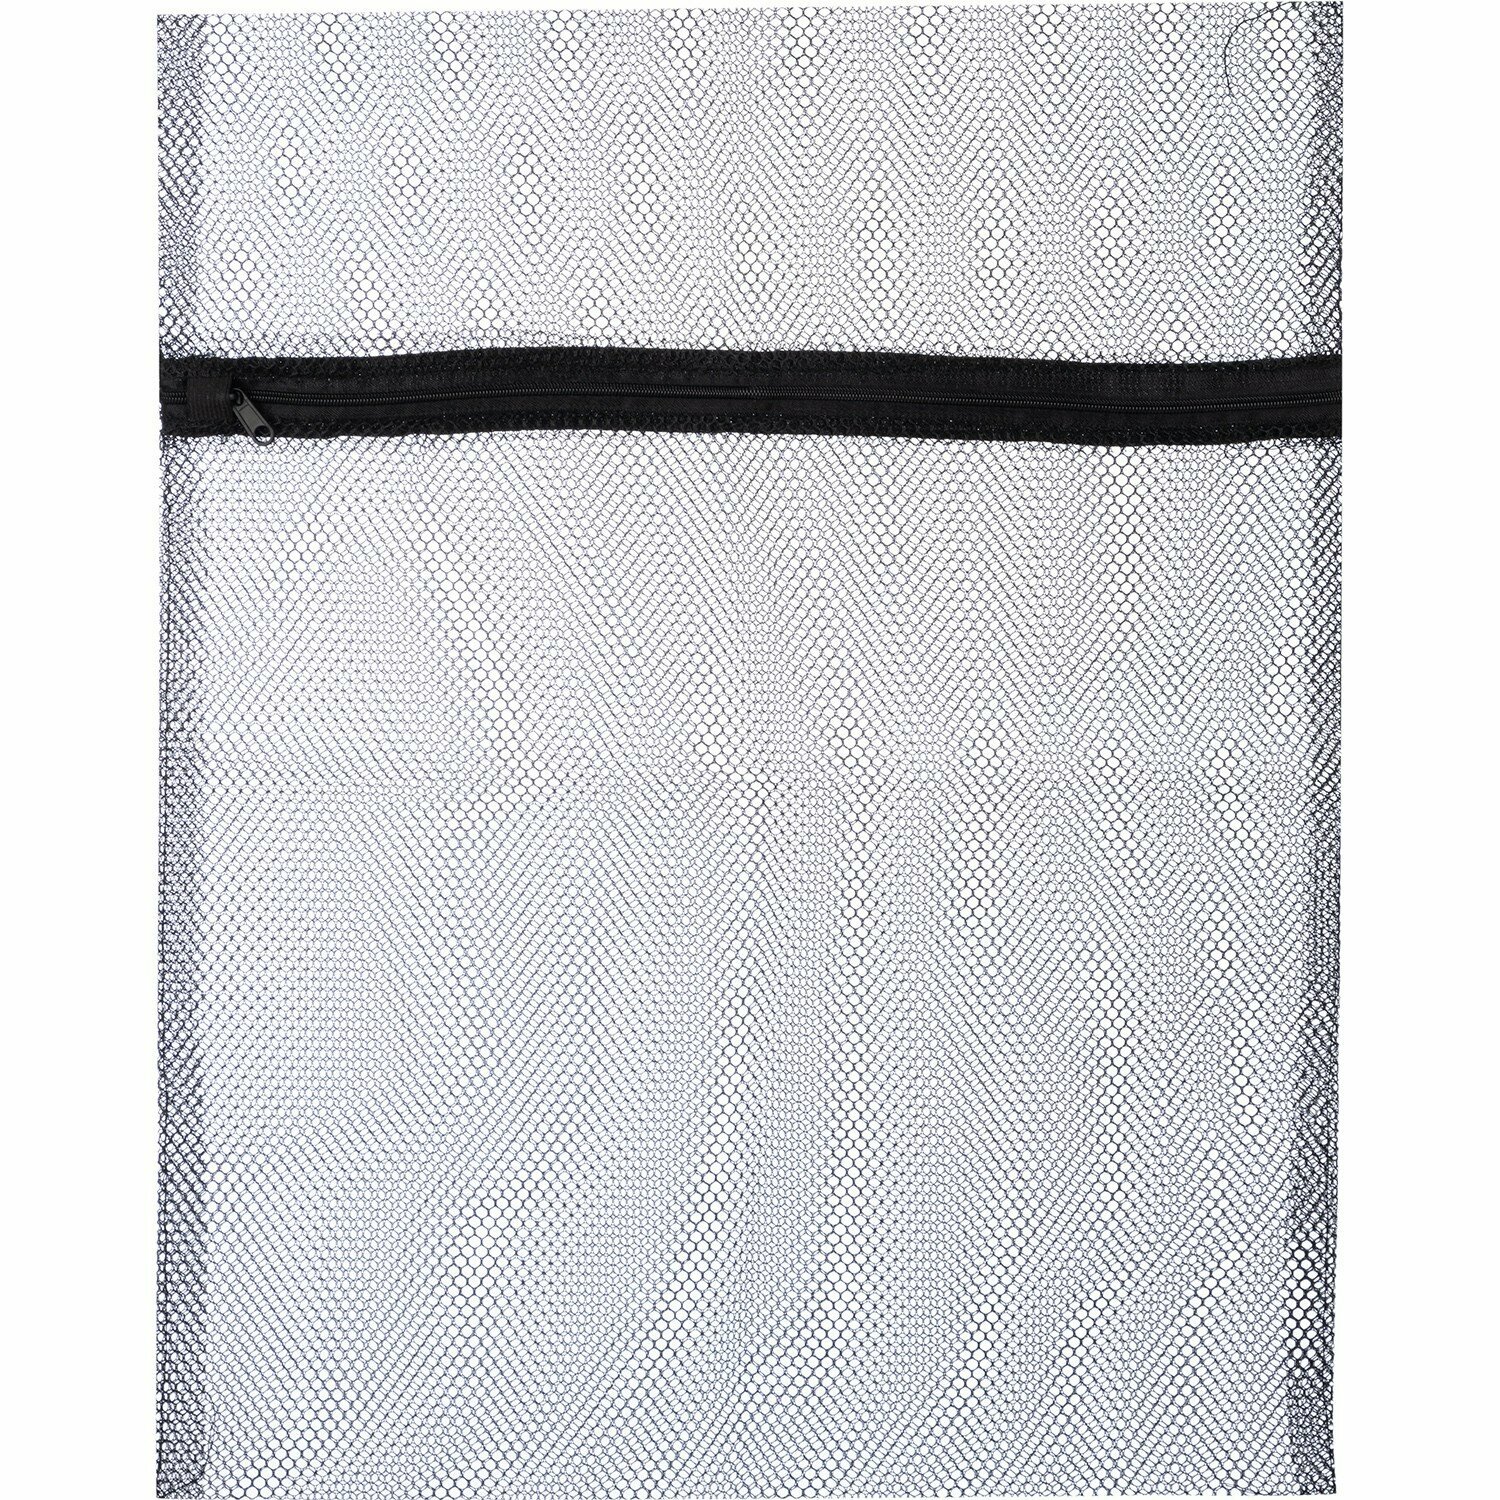 Мешок для стирки белья Рыжий кот, 40х50 см, черный